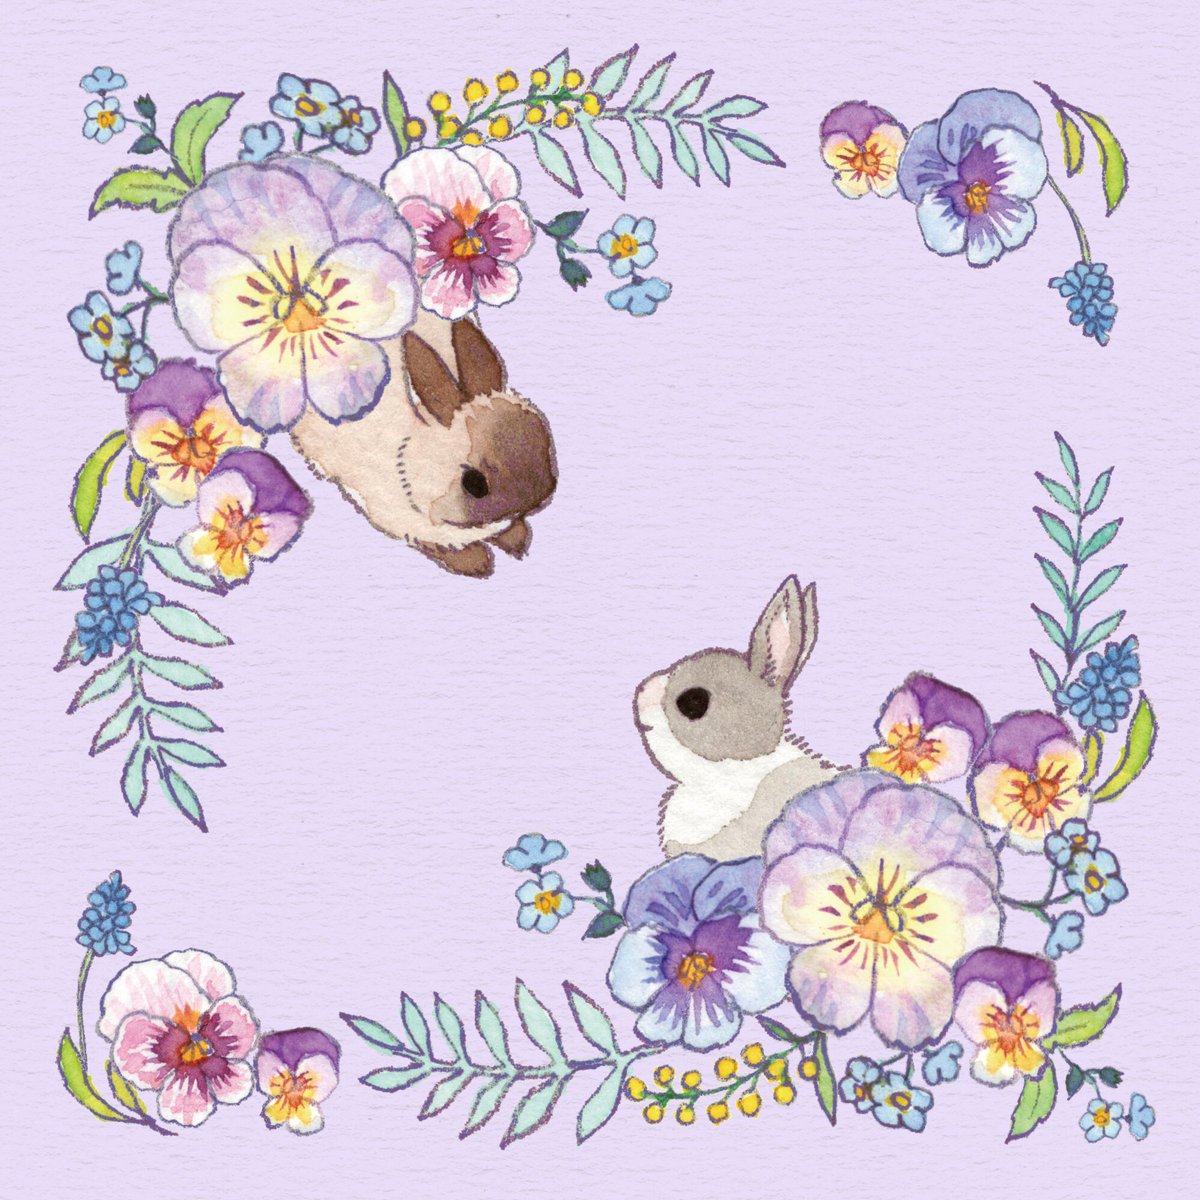 「花畑で遊ぶウサギたち
#イースター 」|こなつのイラスト